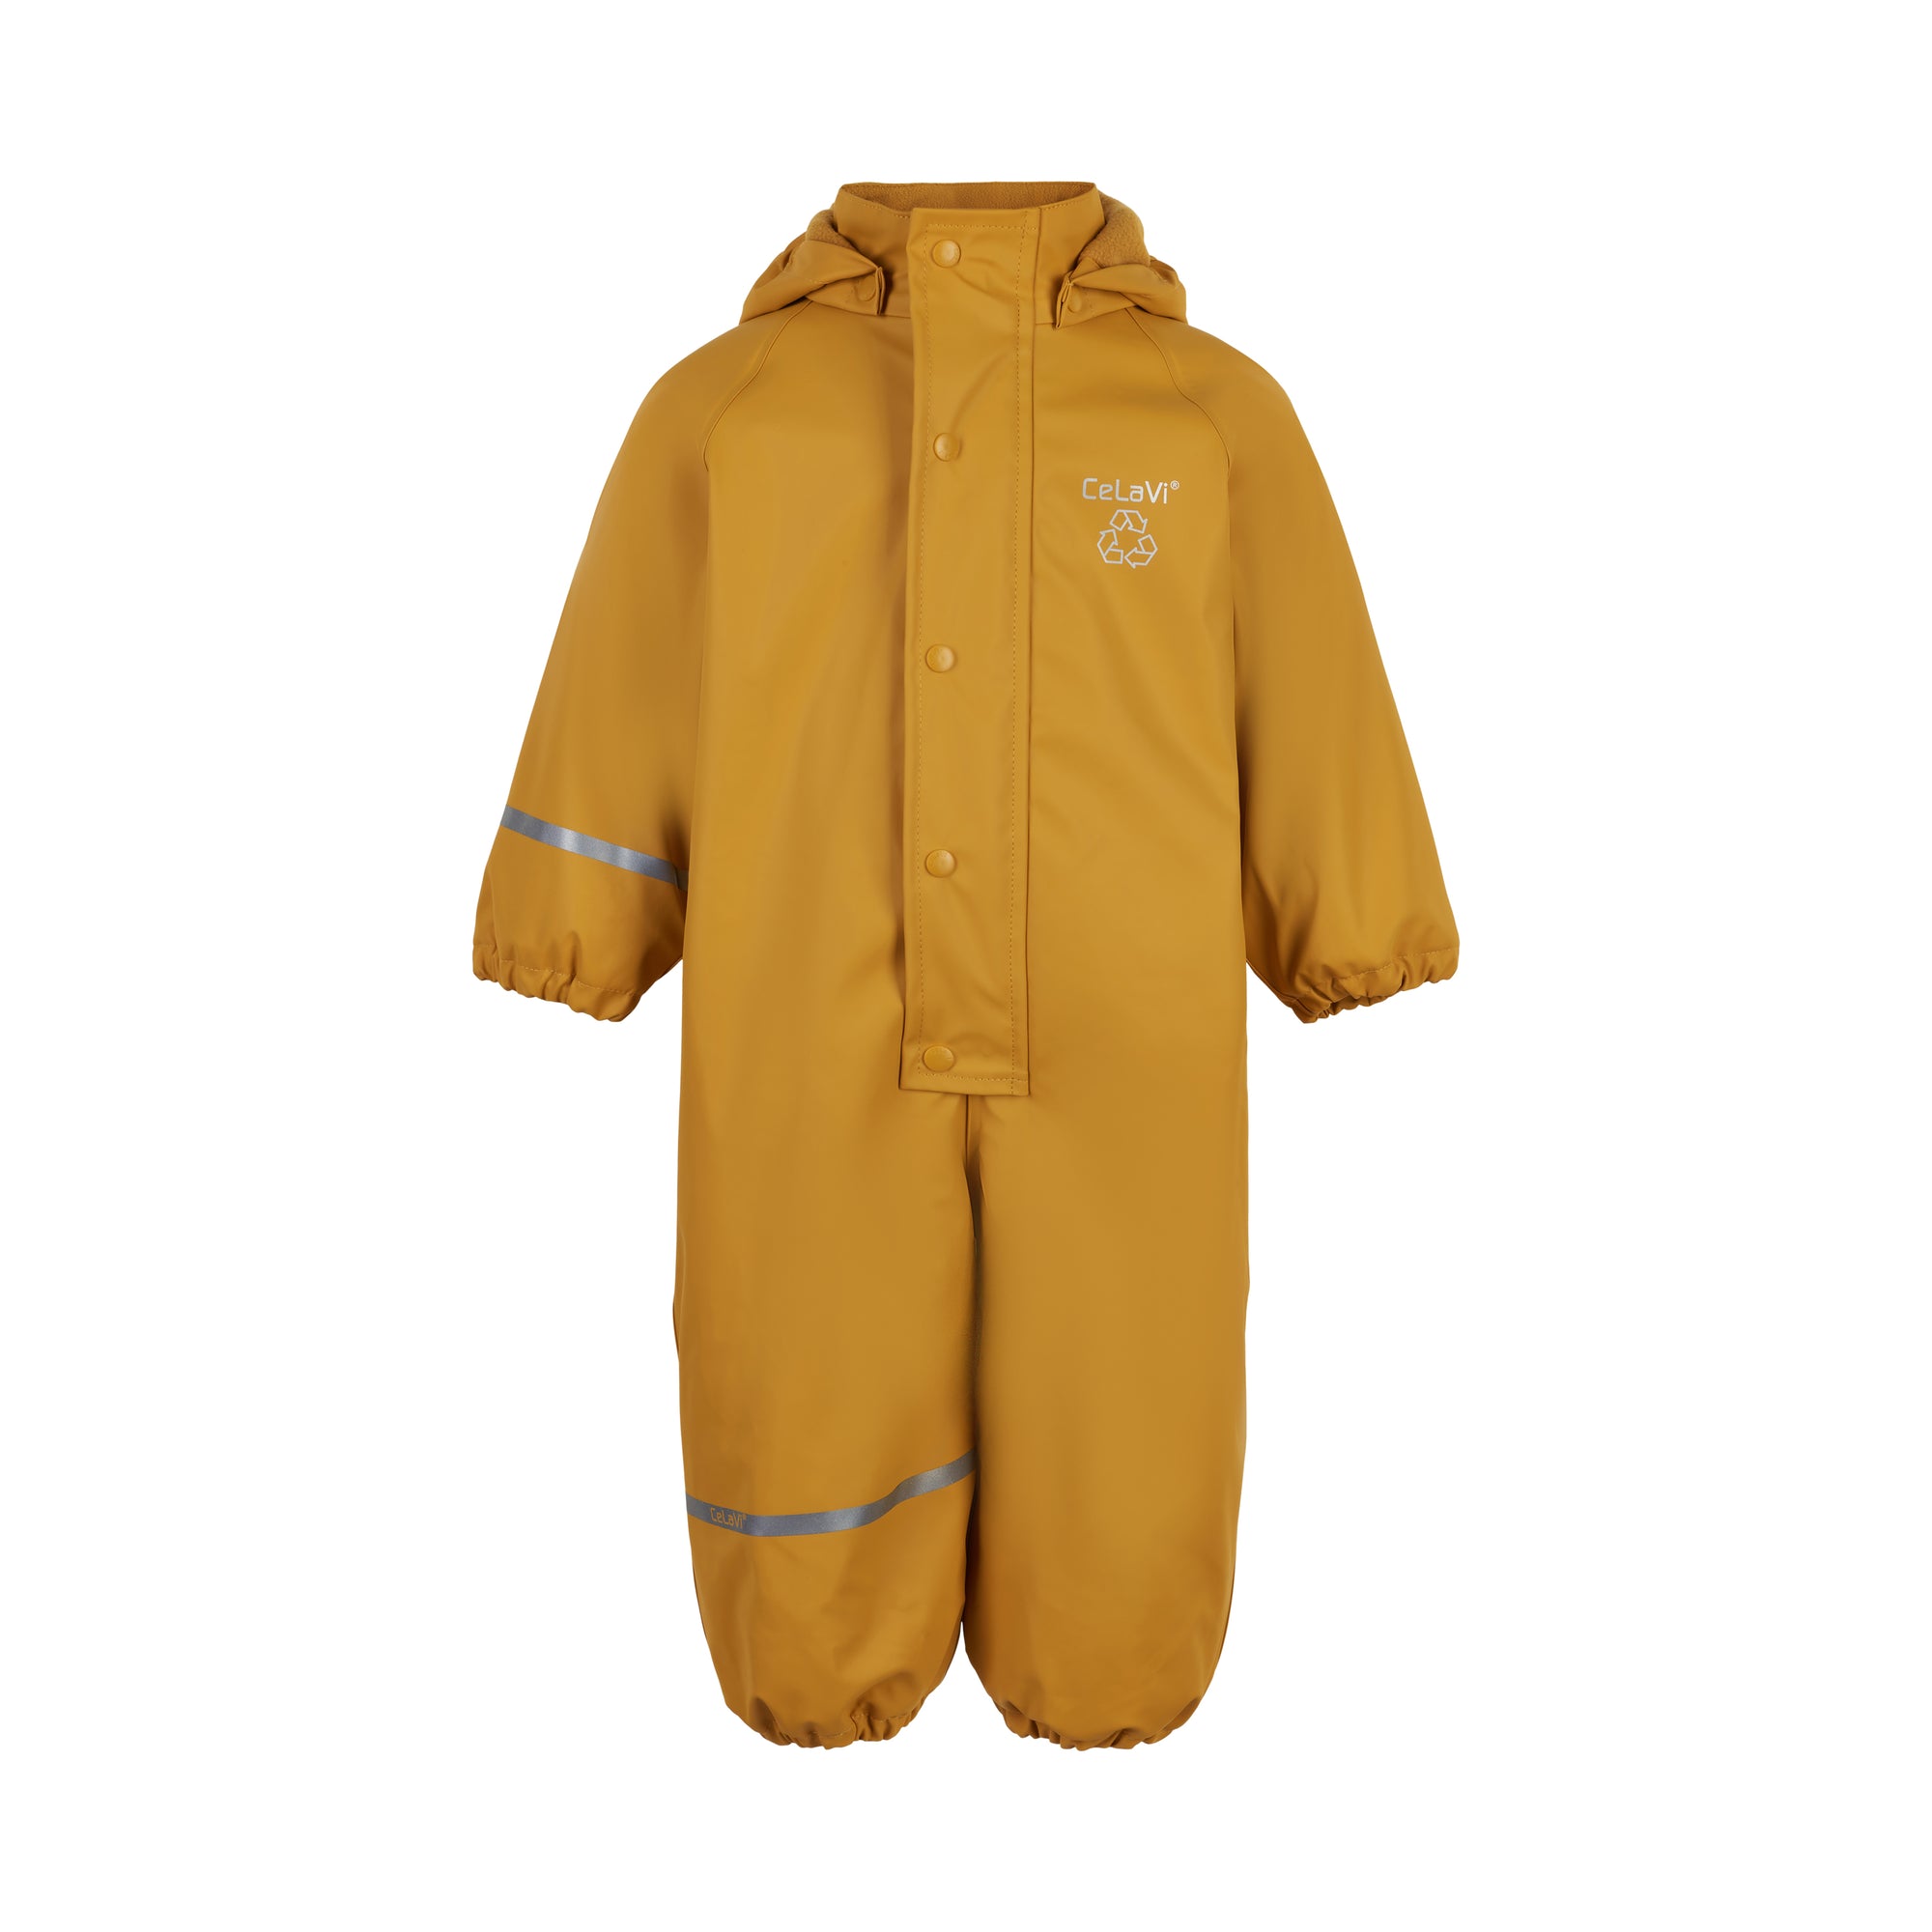 Celavi Rainwear Fleece Solid Mineral Yellow - Gevoerd Regenpak Ge - GOEDvanToen - Eerlijke & biologische kinderkleding babykleding